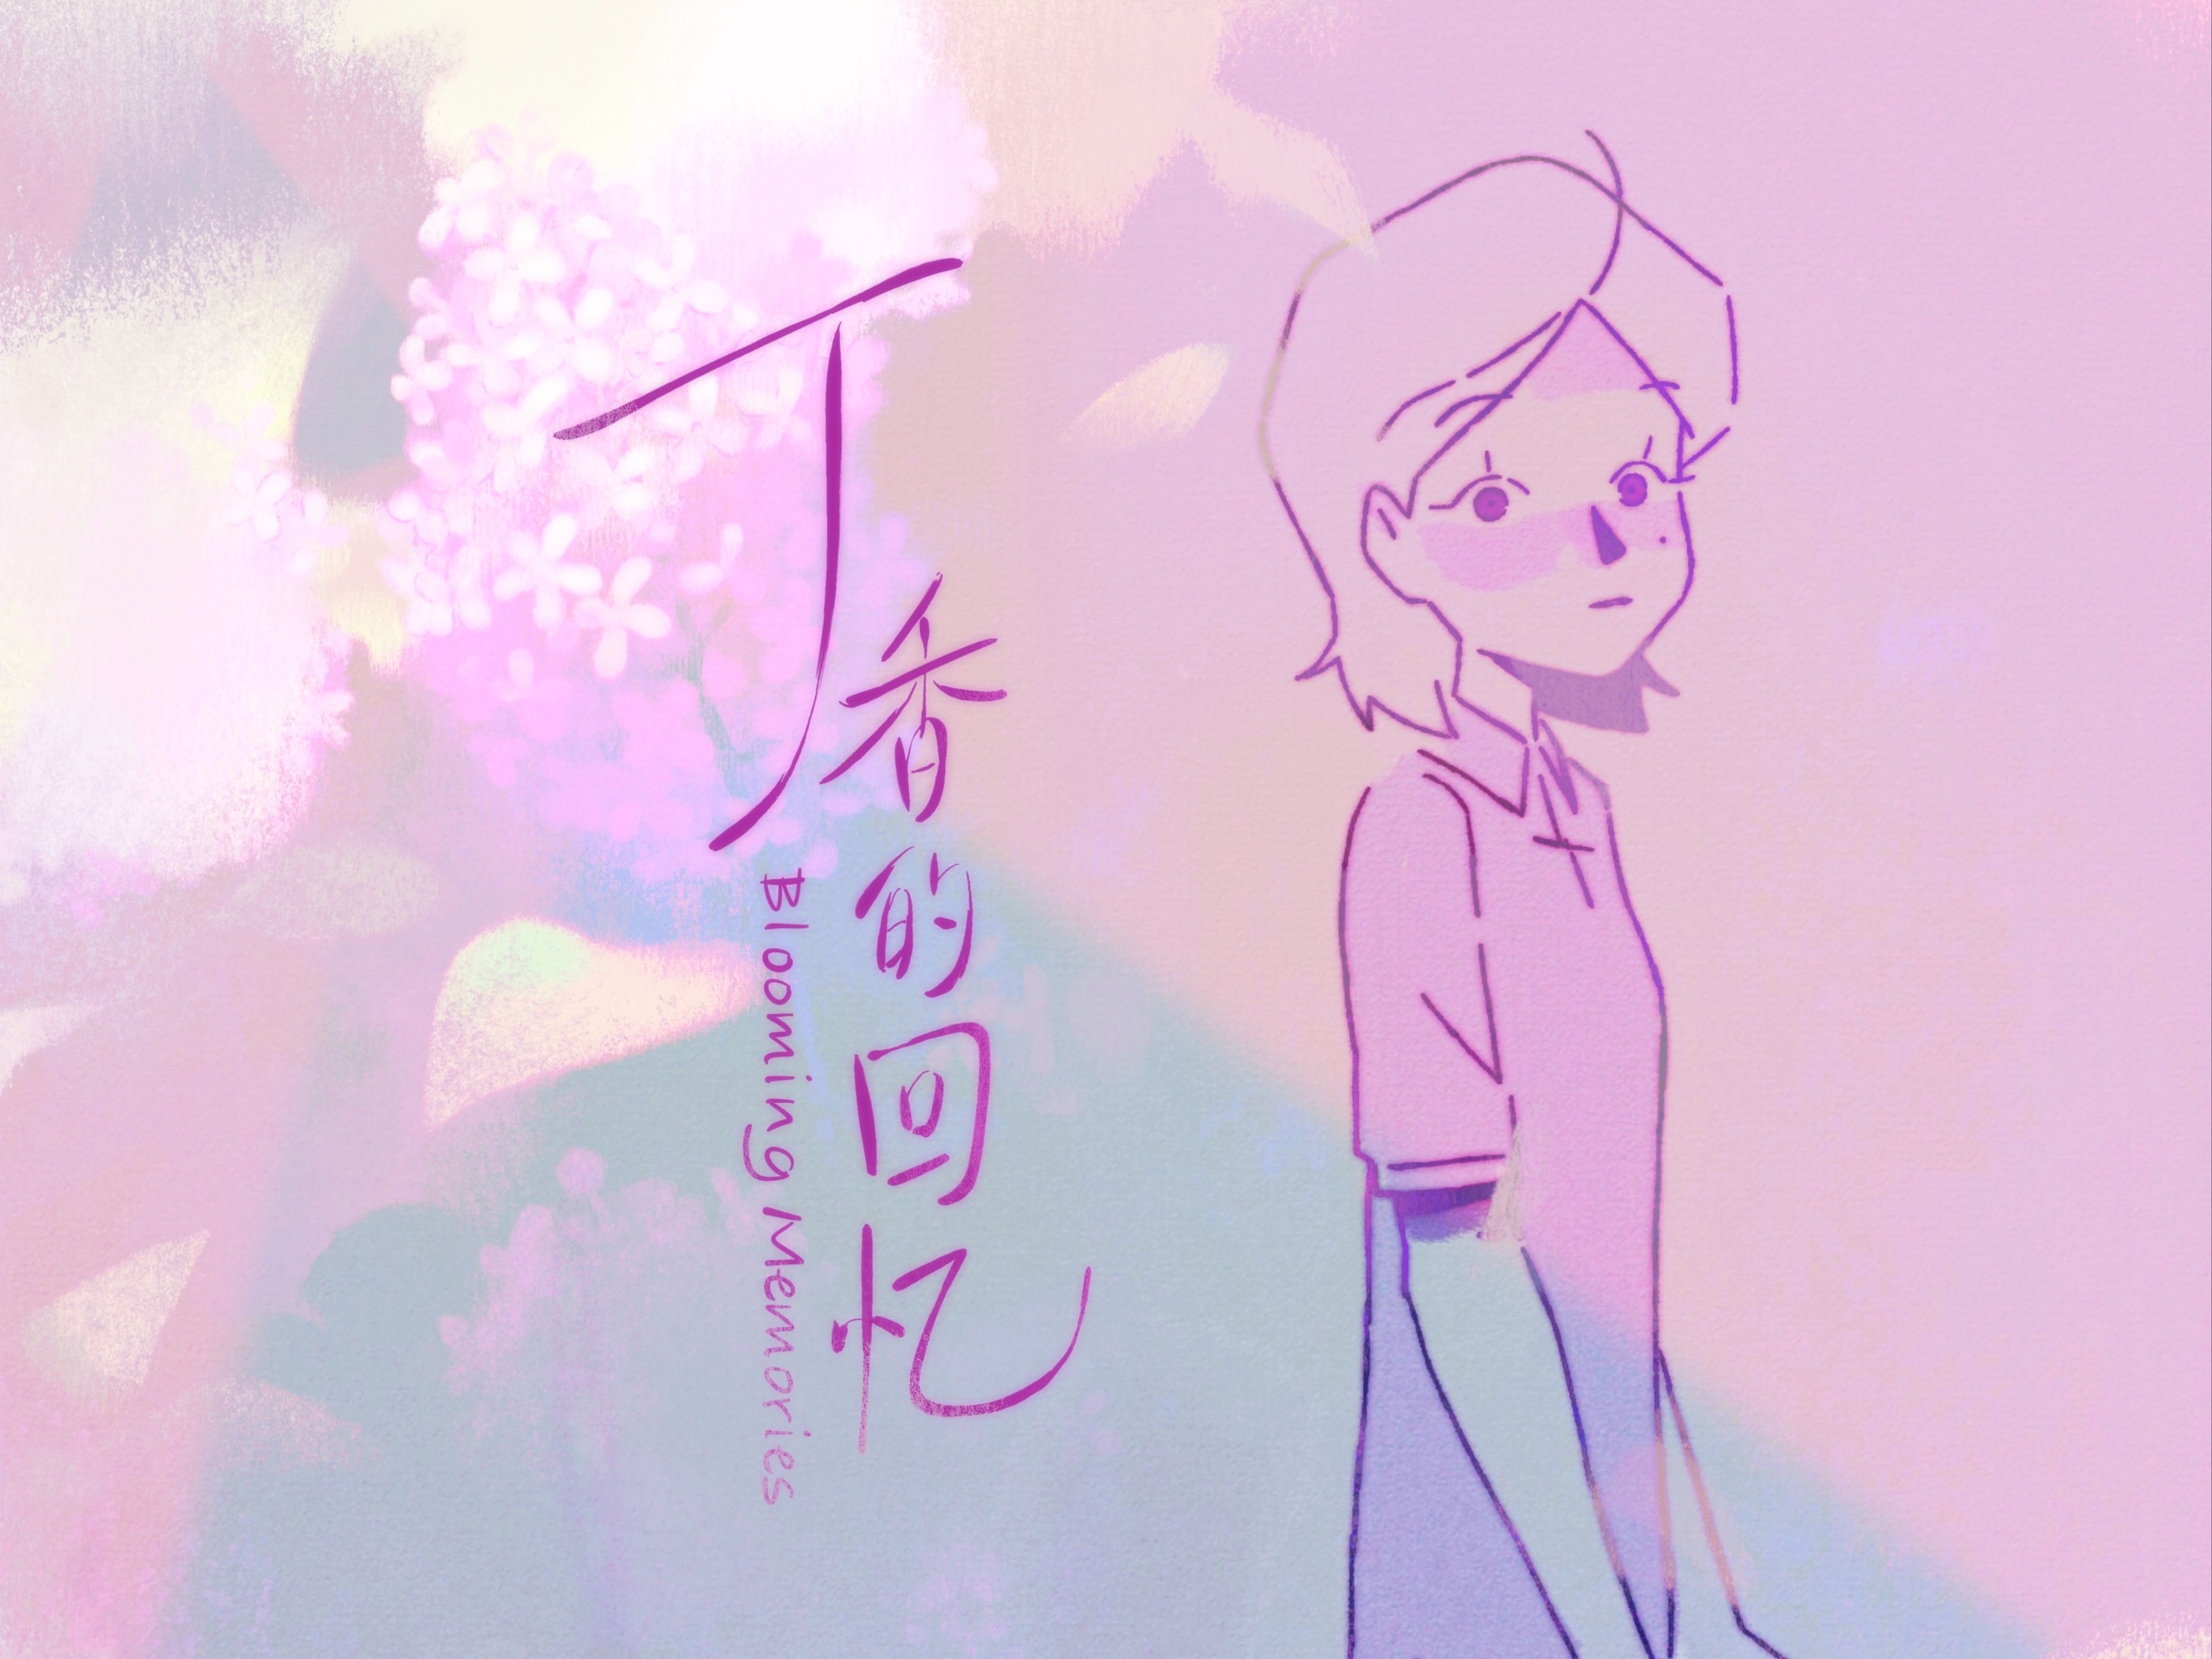 【第六届寻光小宇宙奖】北京电影学院动画毕业设计 | 《丁香的回忆》献给我的高中